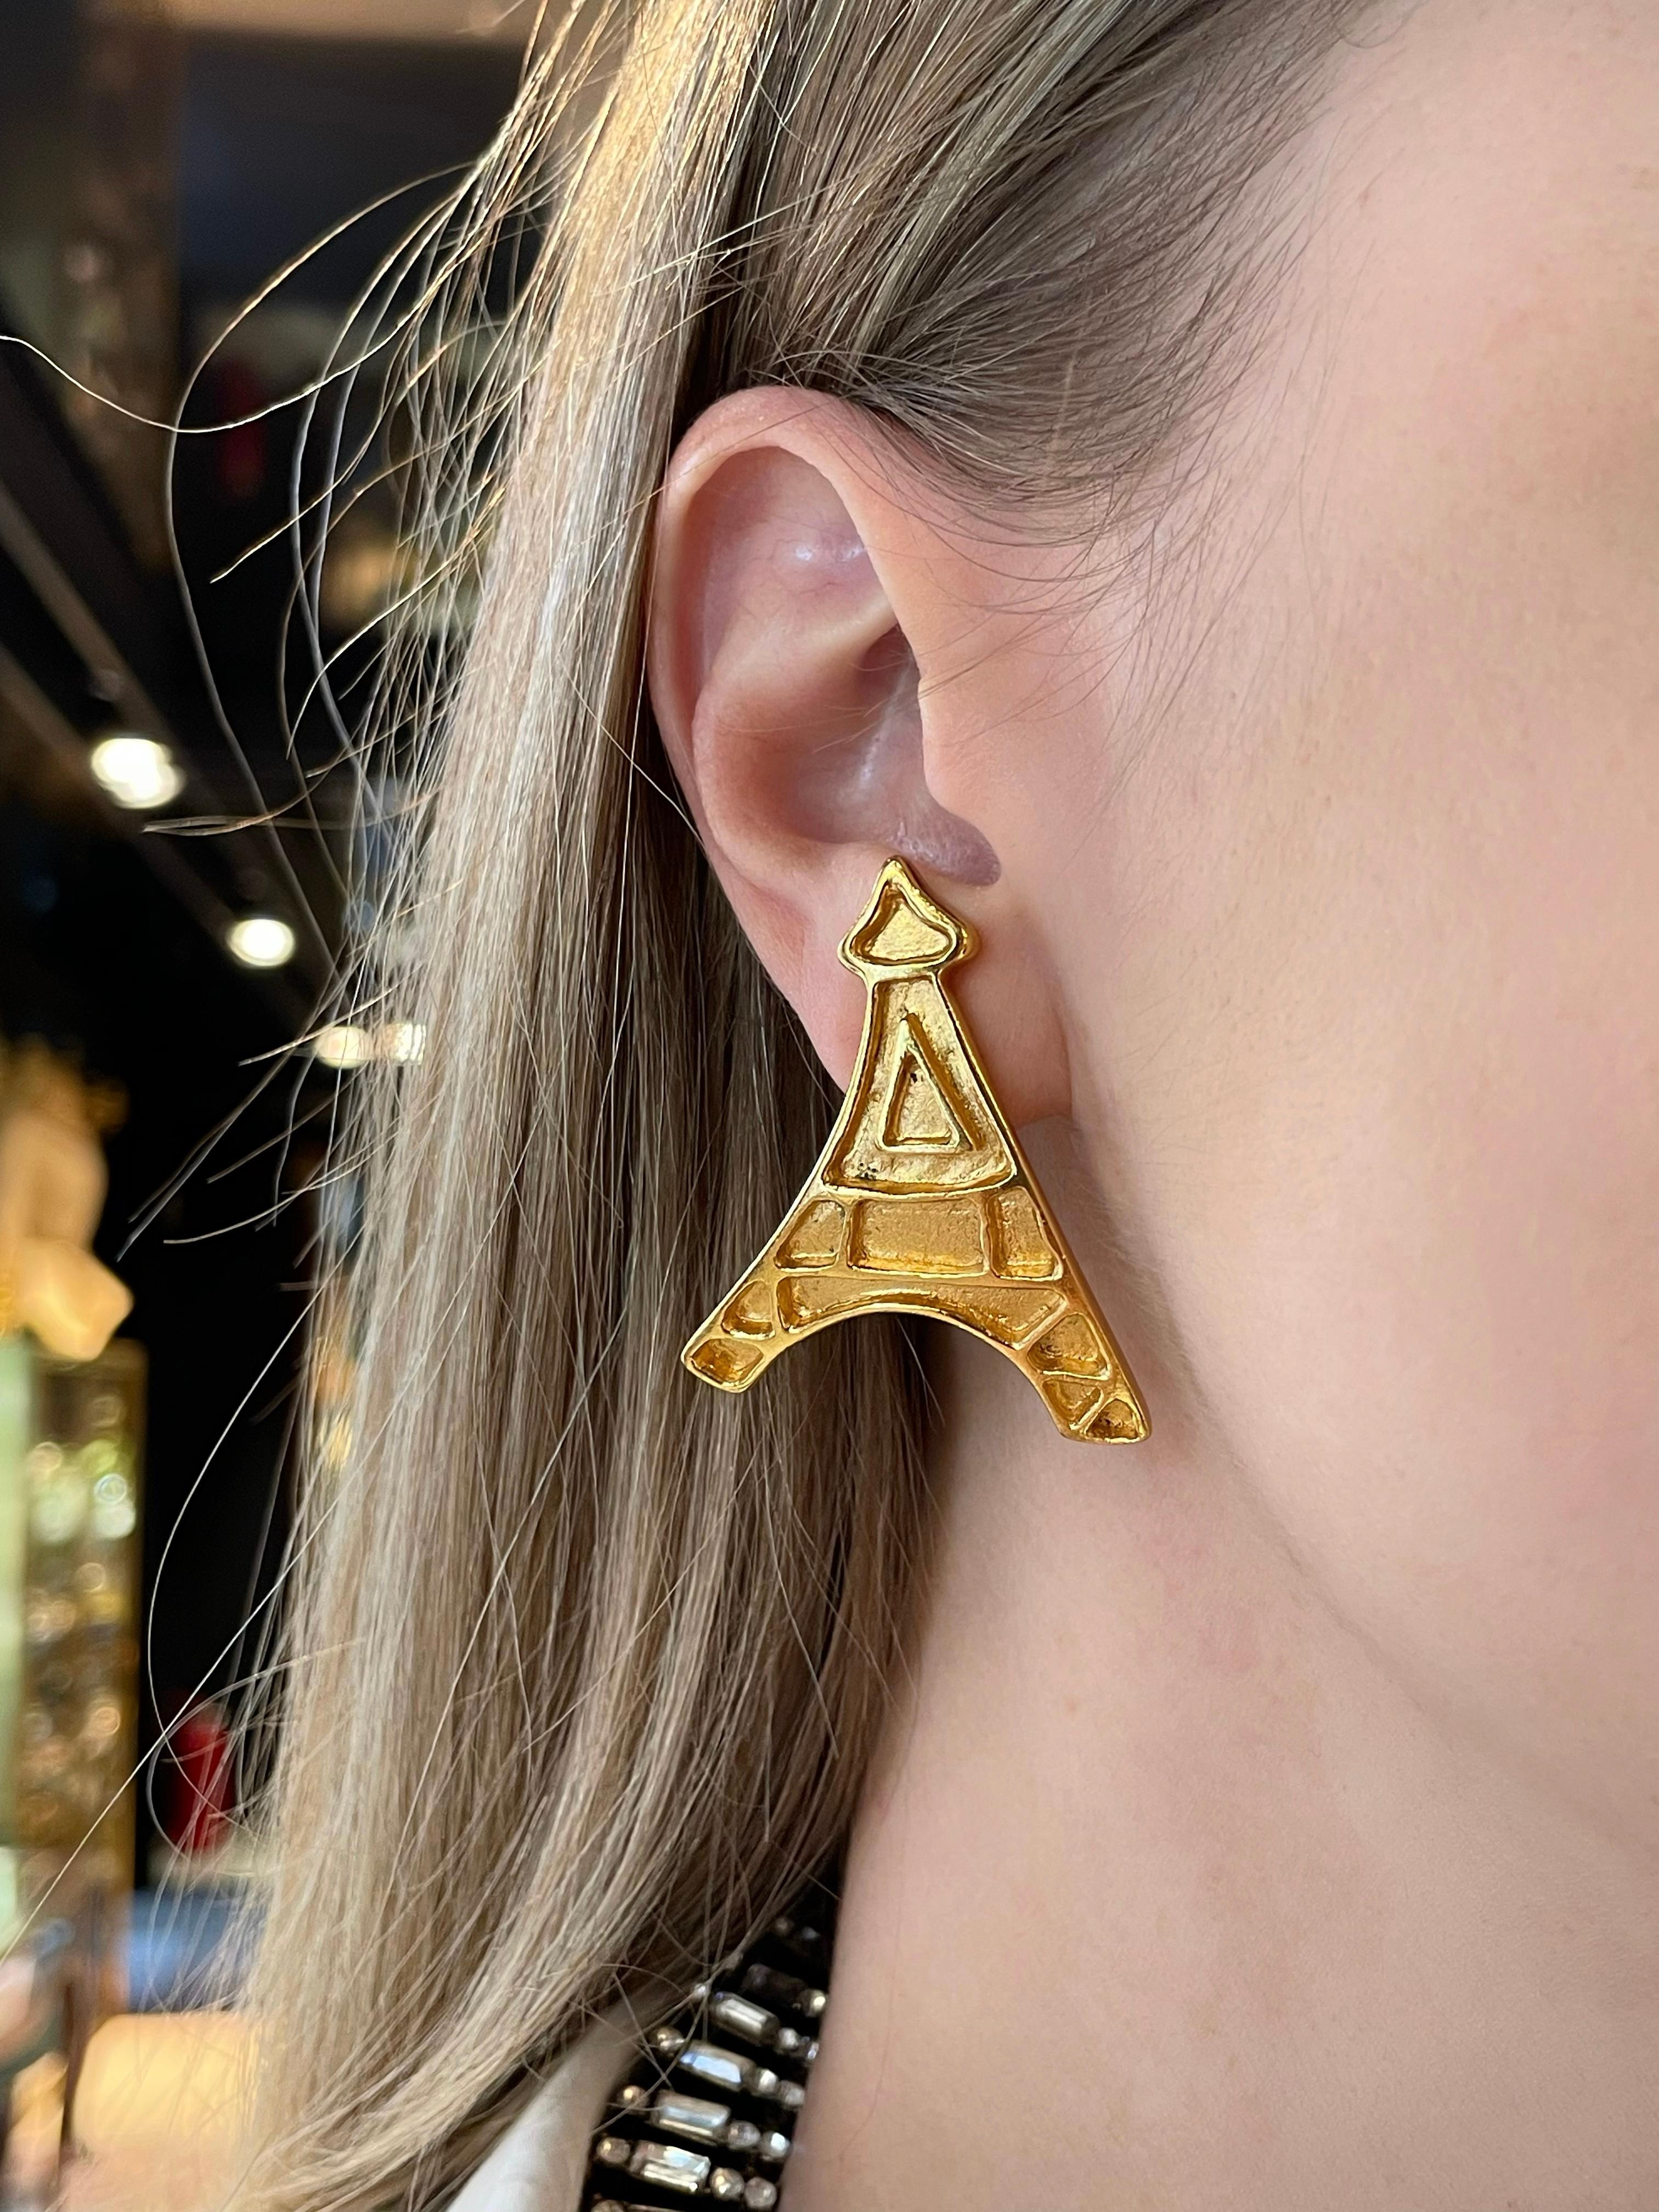 Dies ist ein Paar goldfarbener Vintage-Ohrringe, die die Silhouette des Eiffelturms darstellen. Das Stück ist vergoldet, entworfen von YSL in den 1980er Jahren.

Markierungen: 